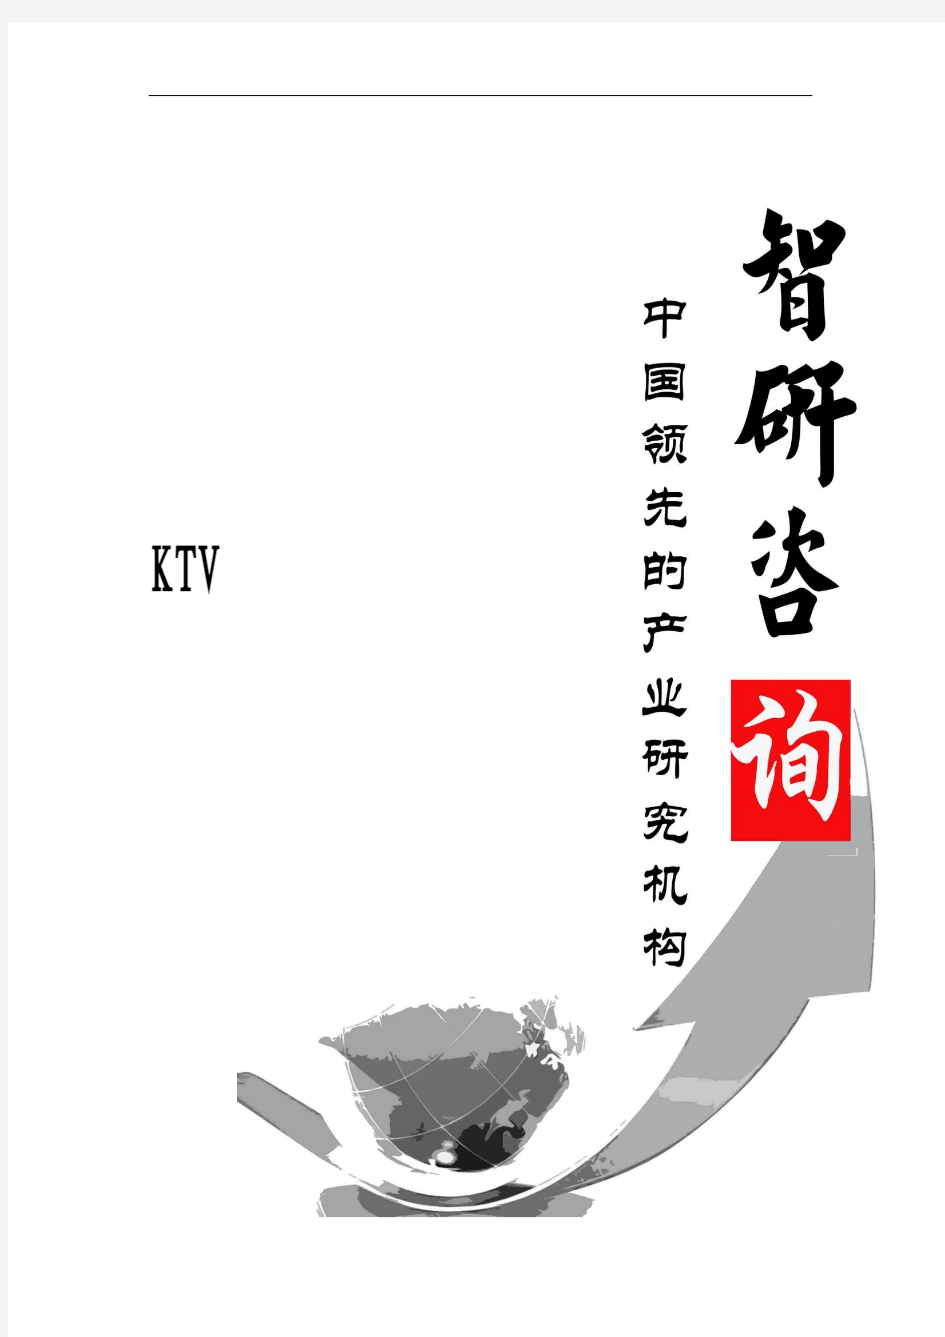 2016-2022年中国KTV行业全景调研及投资战略咨询报告